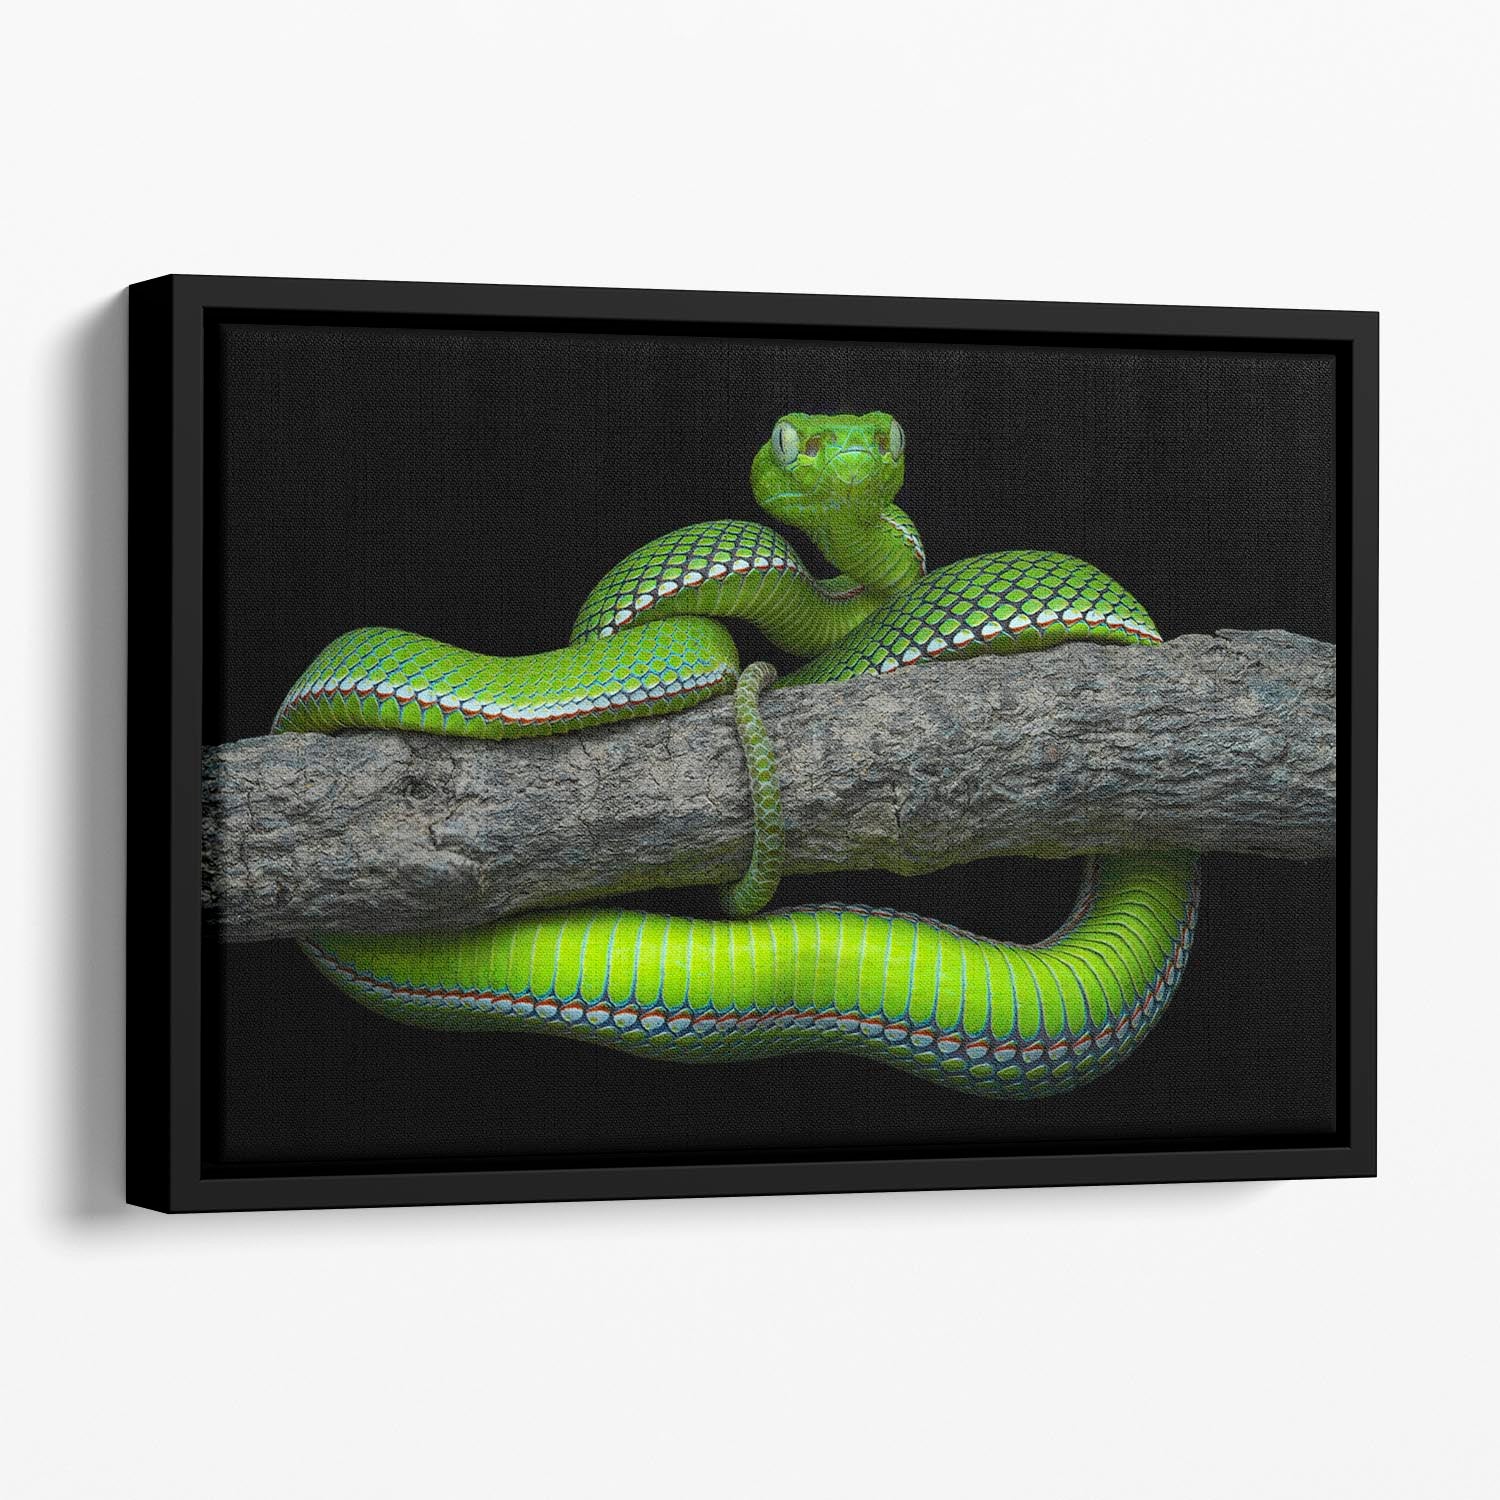 Green Trimeresurus Vogeli Snake Floating Framed Canvas - Canvas Art Rocks - 1